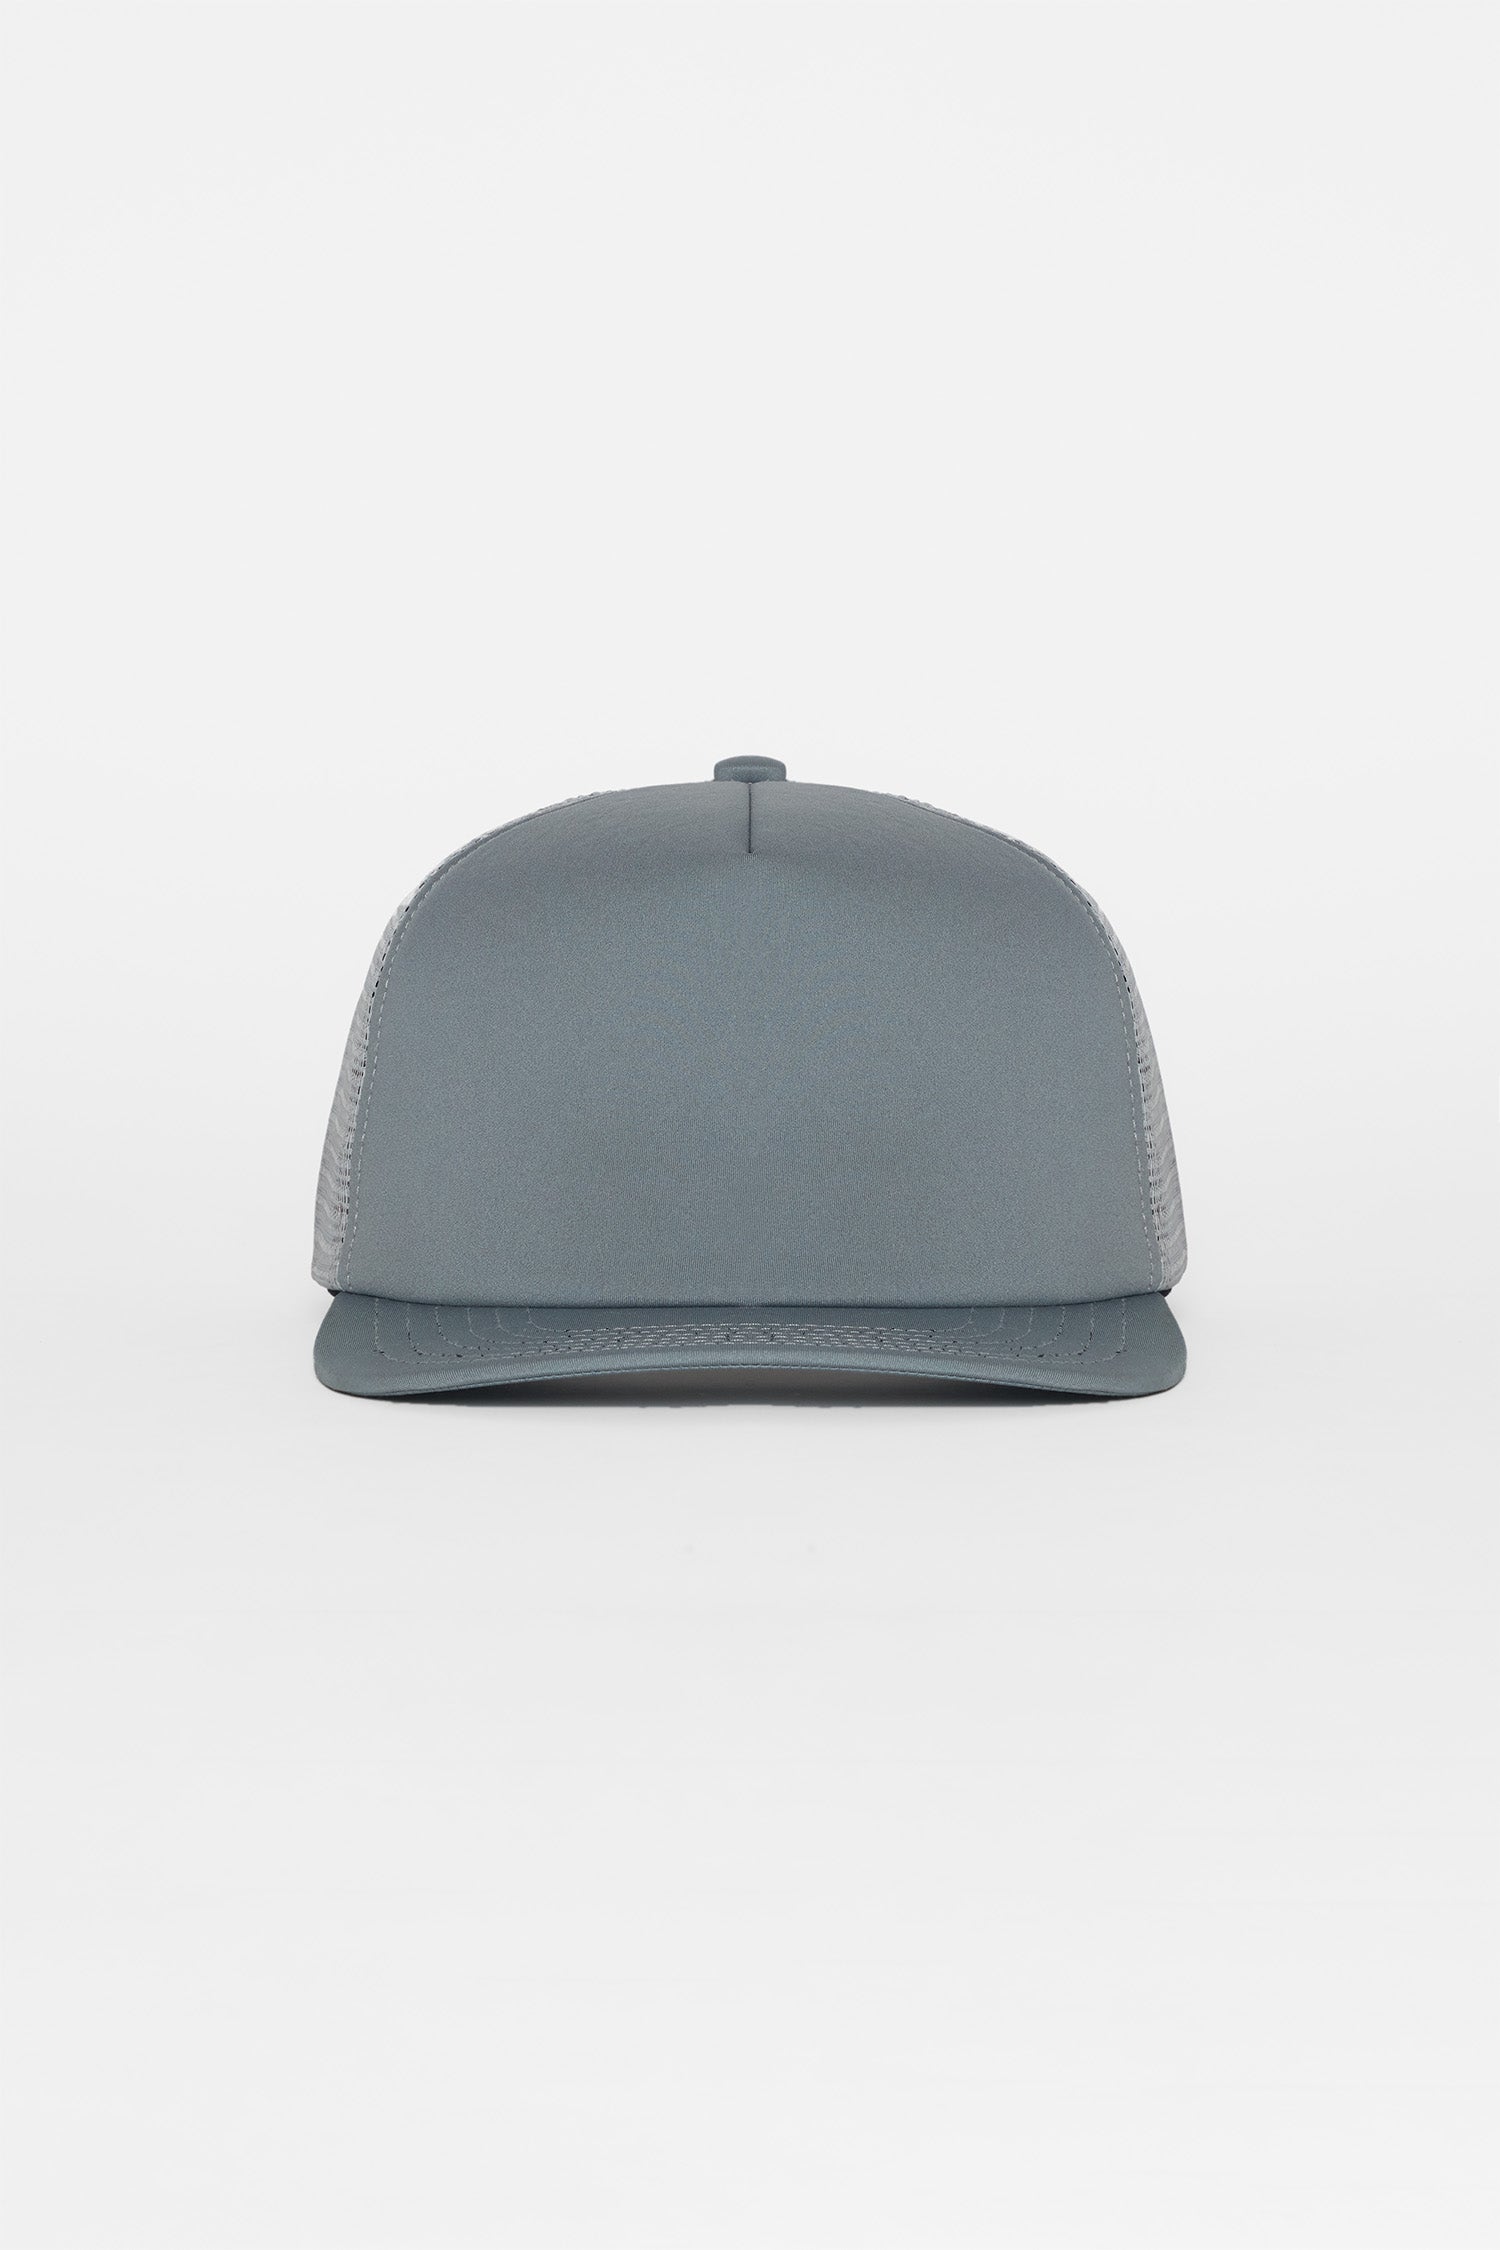 Los Angeles Apparel | Trucker Hat in Steel/Grey